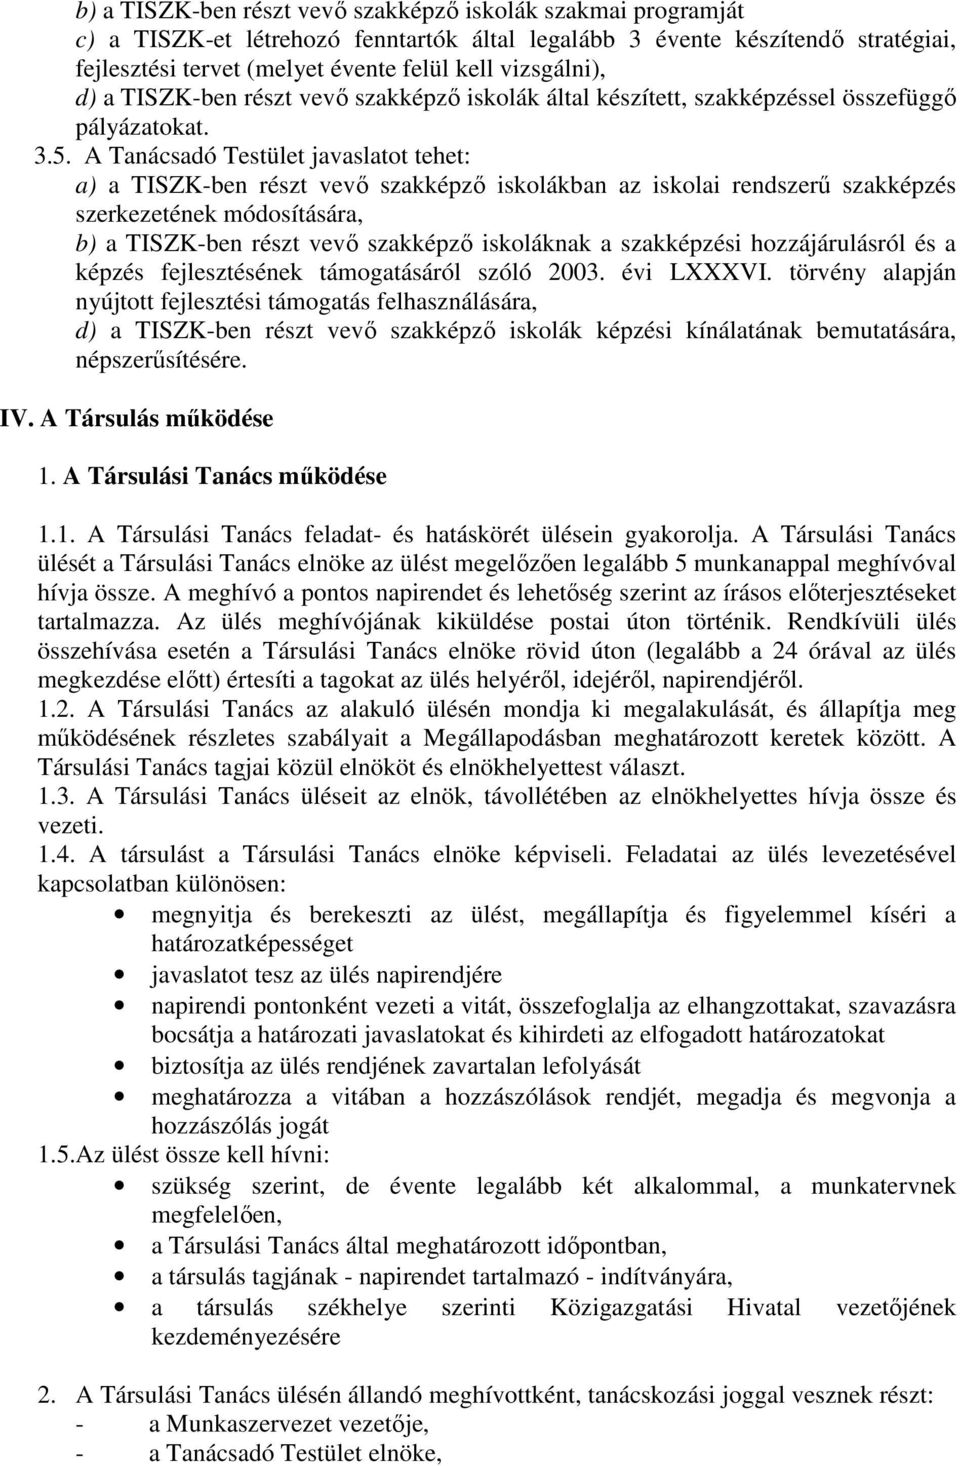 A Tanácsadó Testület javaslatot tehet: a) a TISZK-ben részt vevı szakképzı iskolákban az iskolai rendszerő szakképzés szerkezetének módosítására, b) a TISZK-ben részt vevı szakképzı iskoláknak a